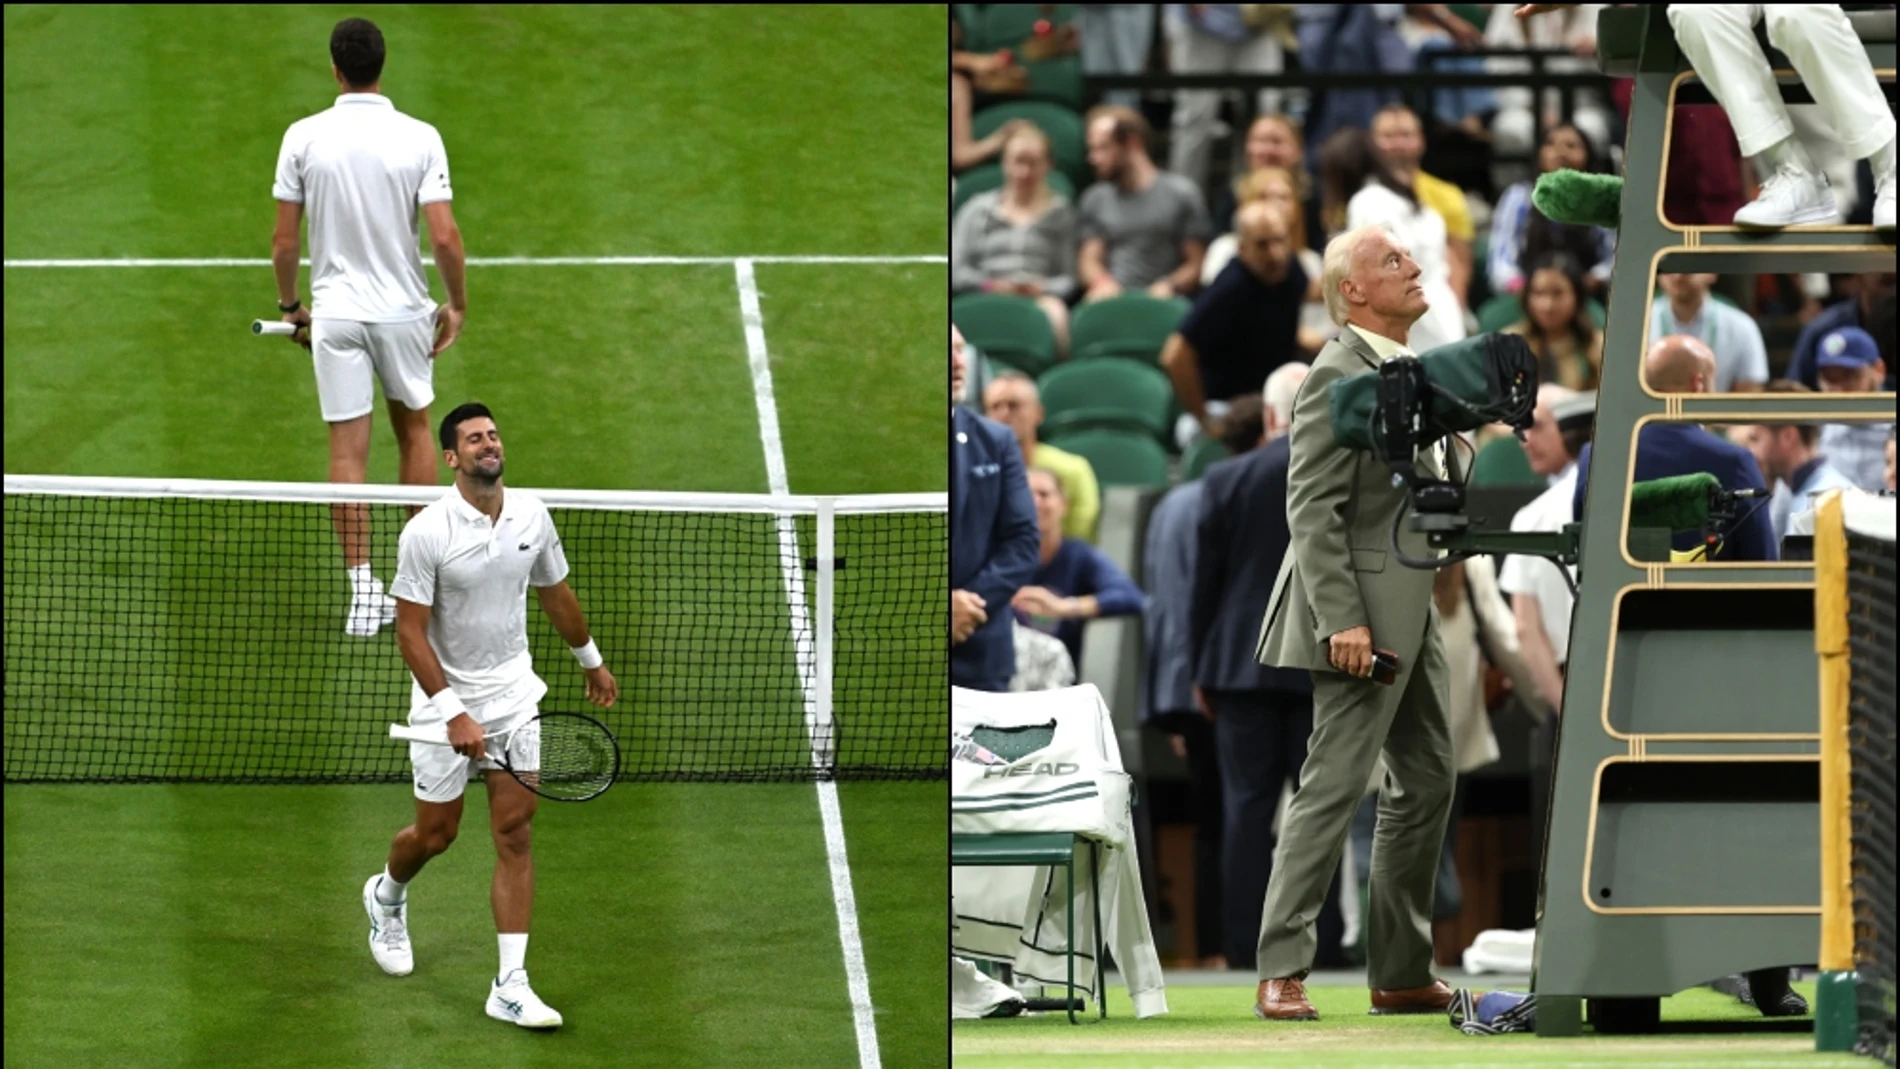 ¿Por qué se suspendió el partido de Djokovic en Wimbledon?